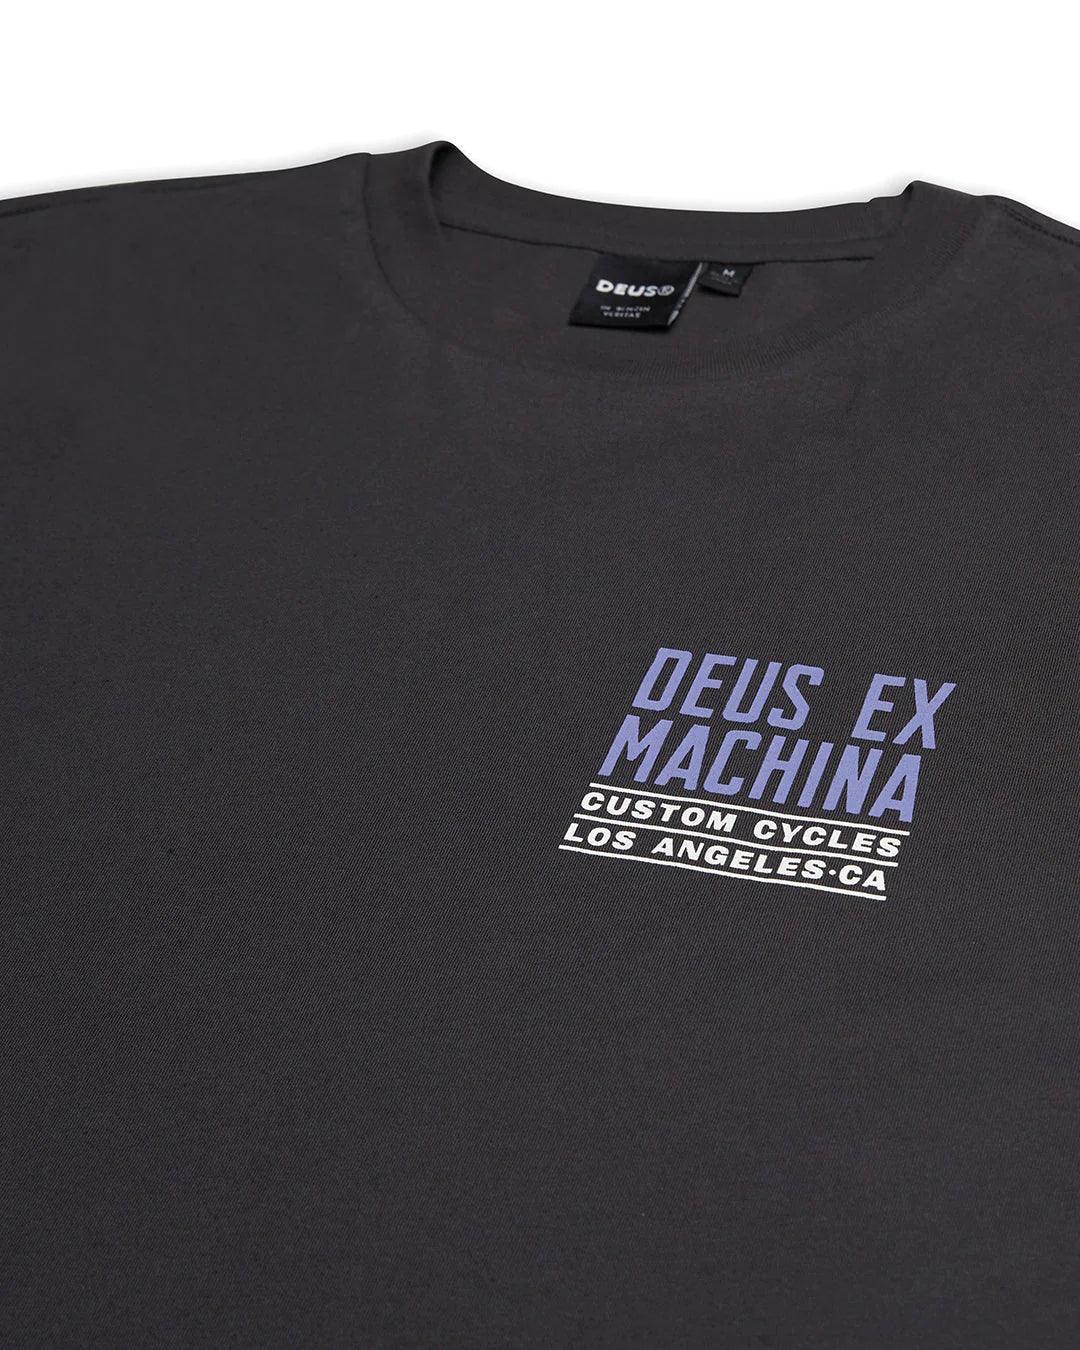 Camiseta Deus Ex Machina Beam Tee Anthracite - ECRU